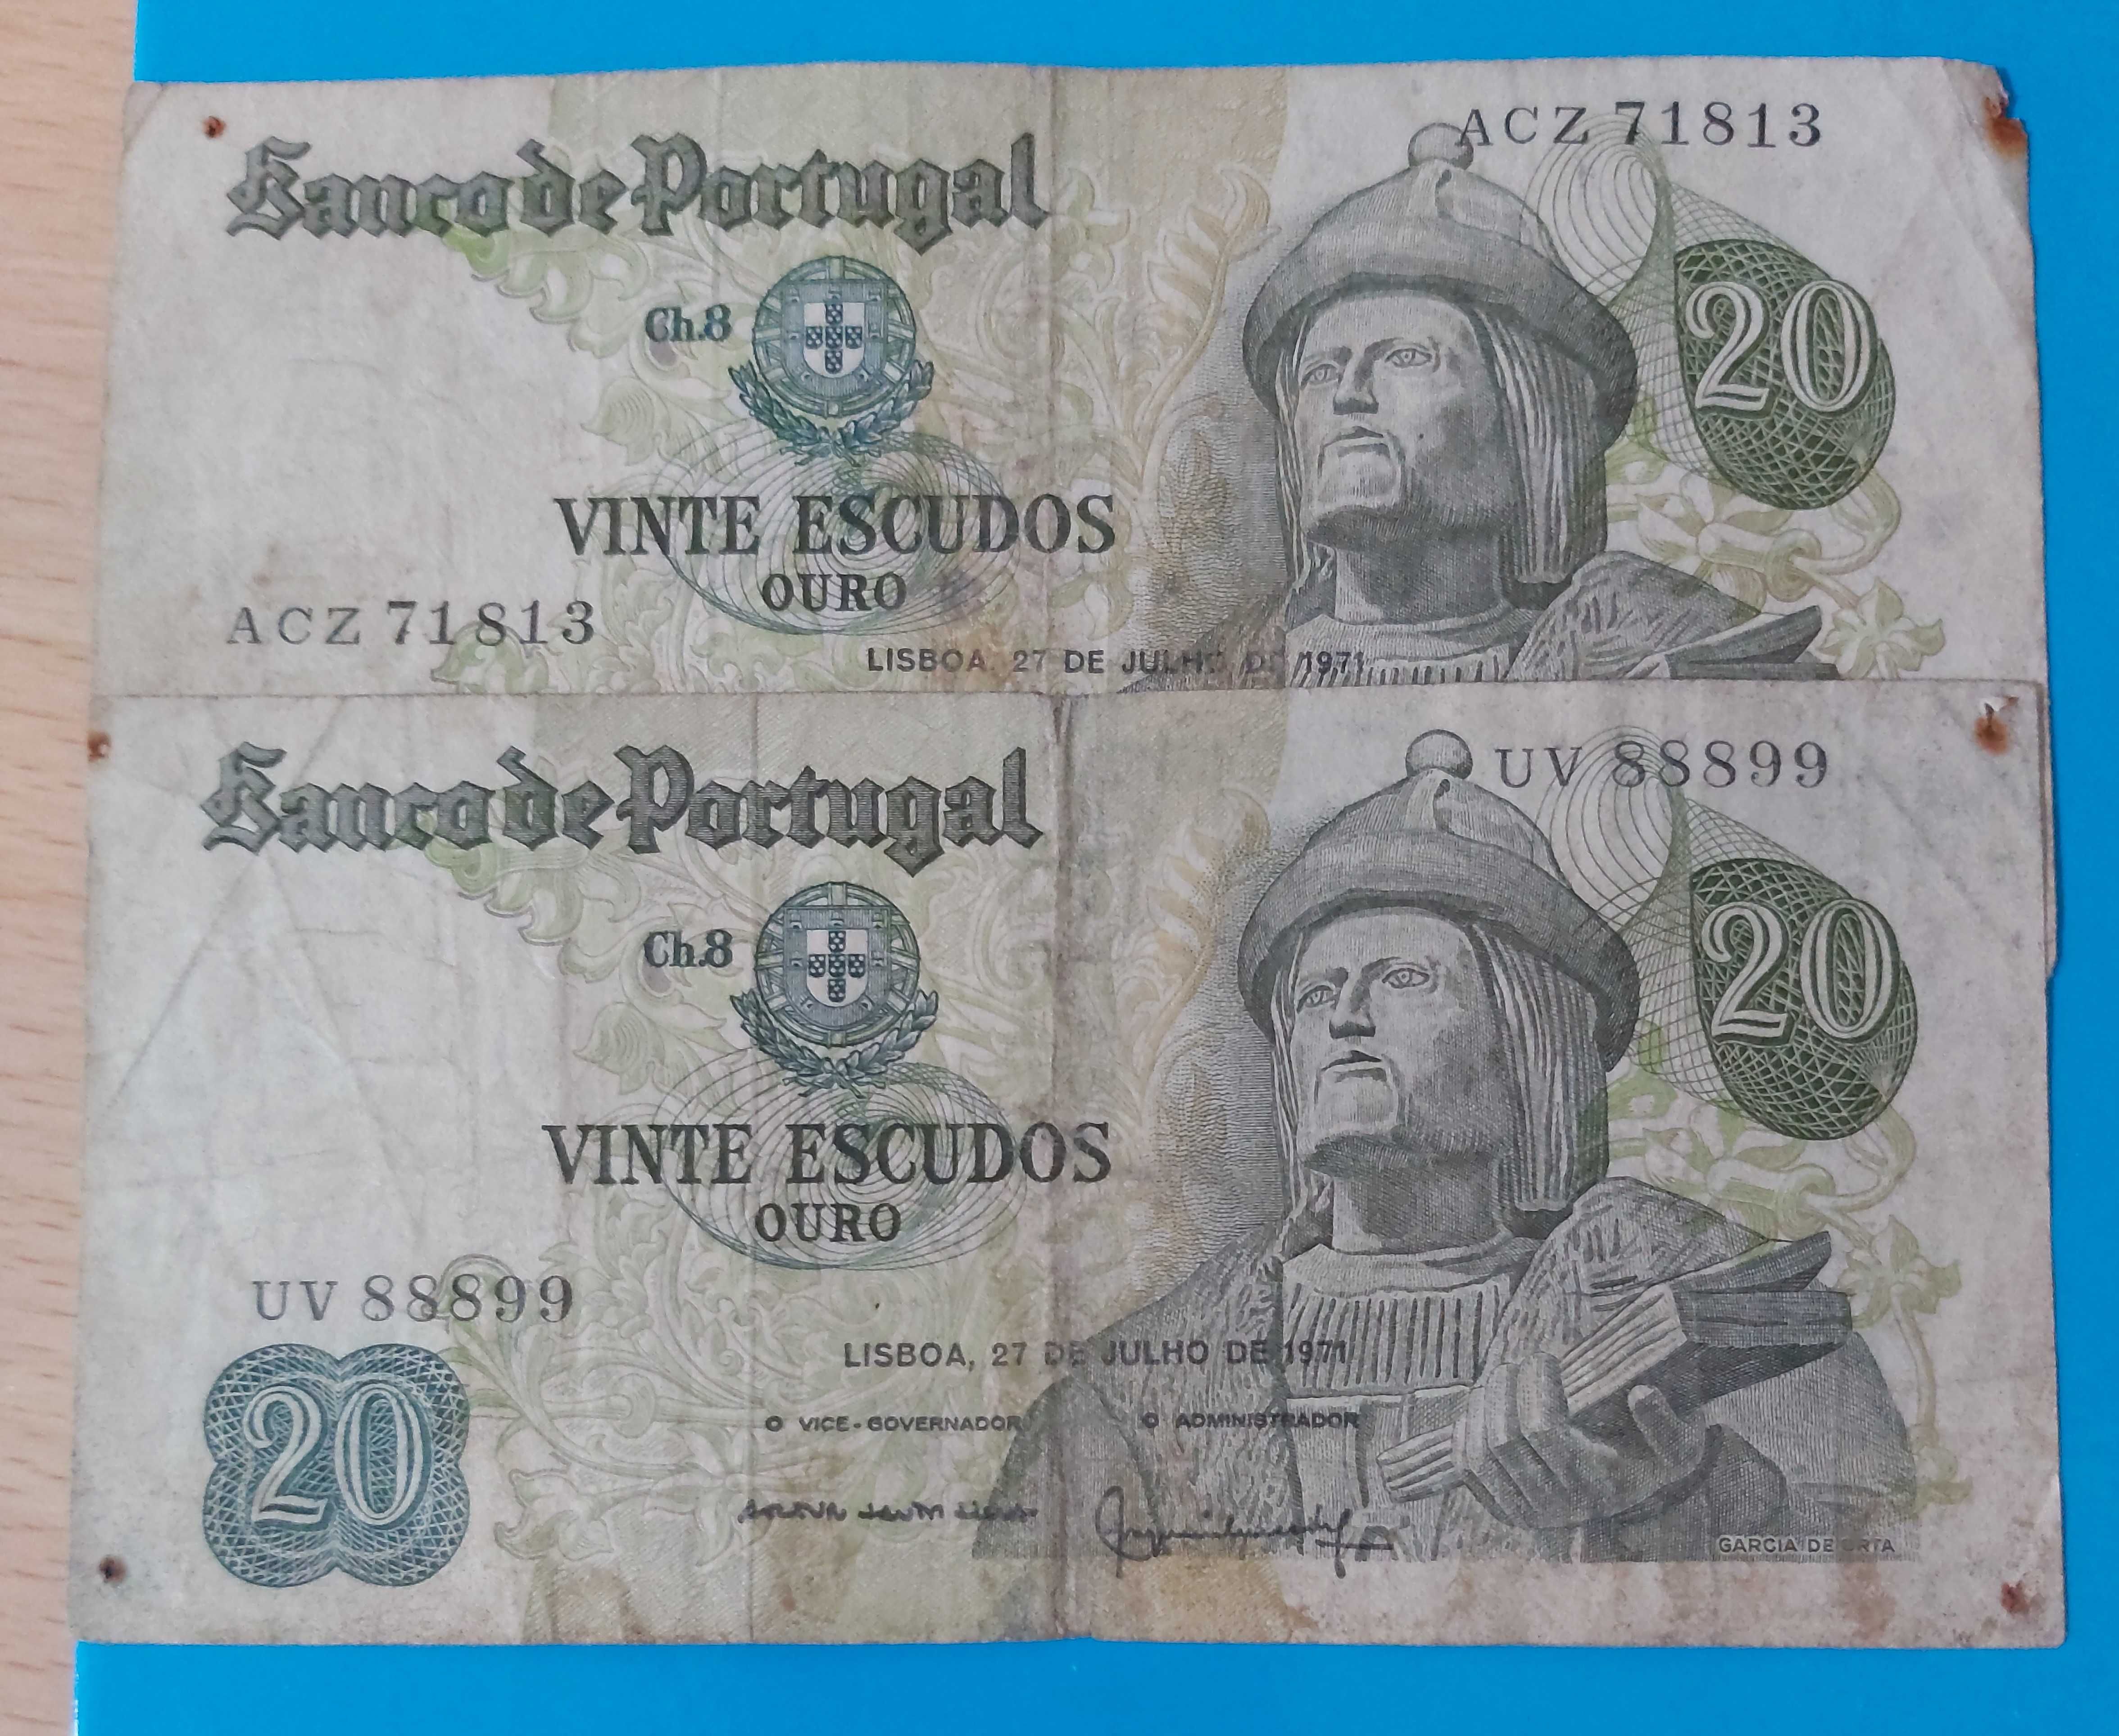 2 Notas de 20$00 de Portugal, CH 8, Garcia de Orta de 1971